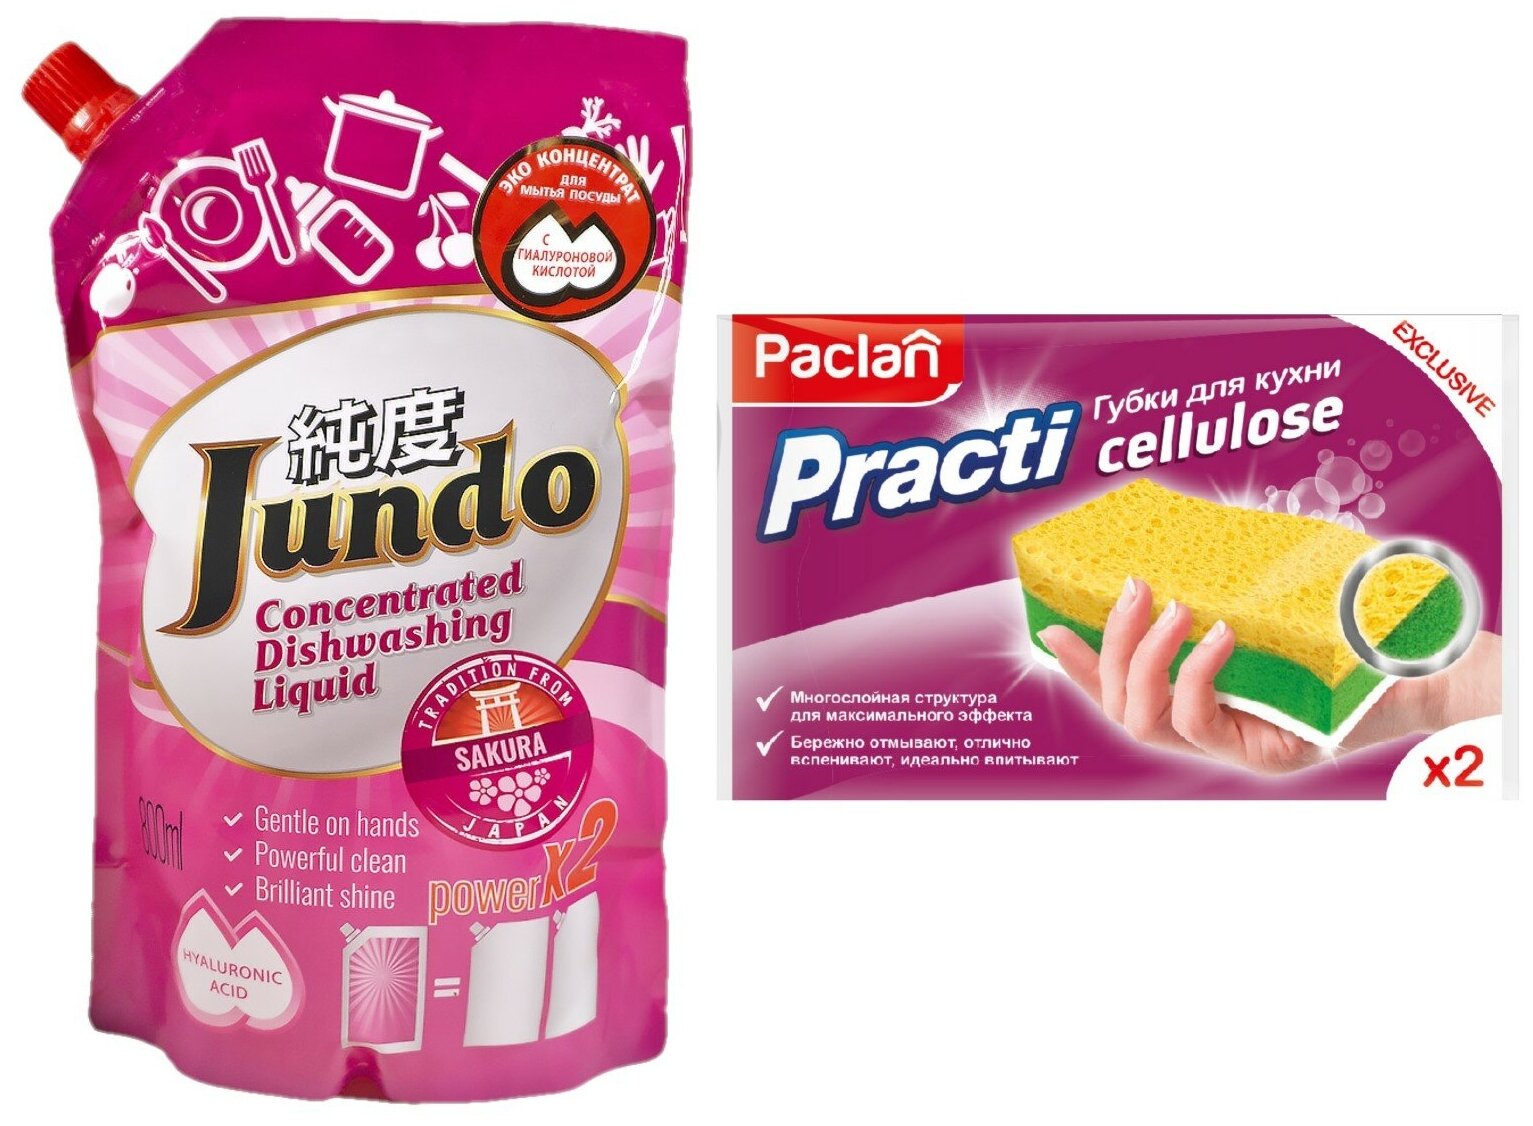 PACLAN PRACTI CELLULOSE губки для кухни, 2ШТ. + Концентрированный гель для мытья посуды и детских принадлежностей Jundo "Sakura" с гиалуроновой кислотой 800 мл